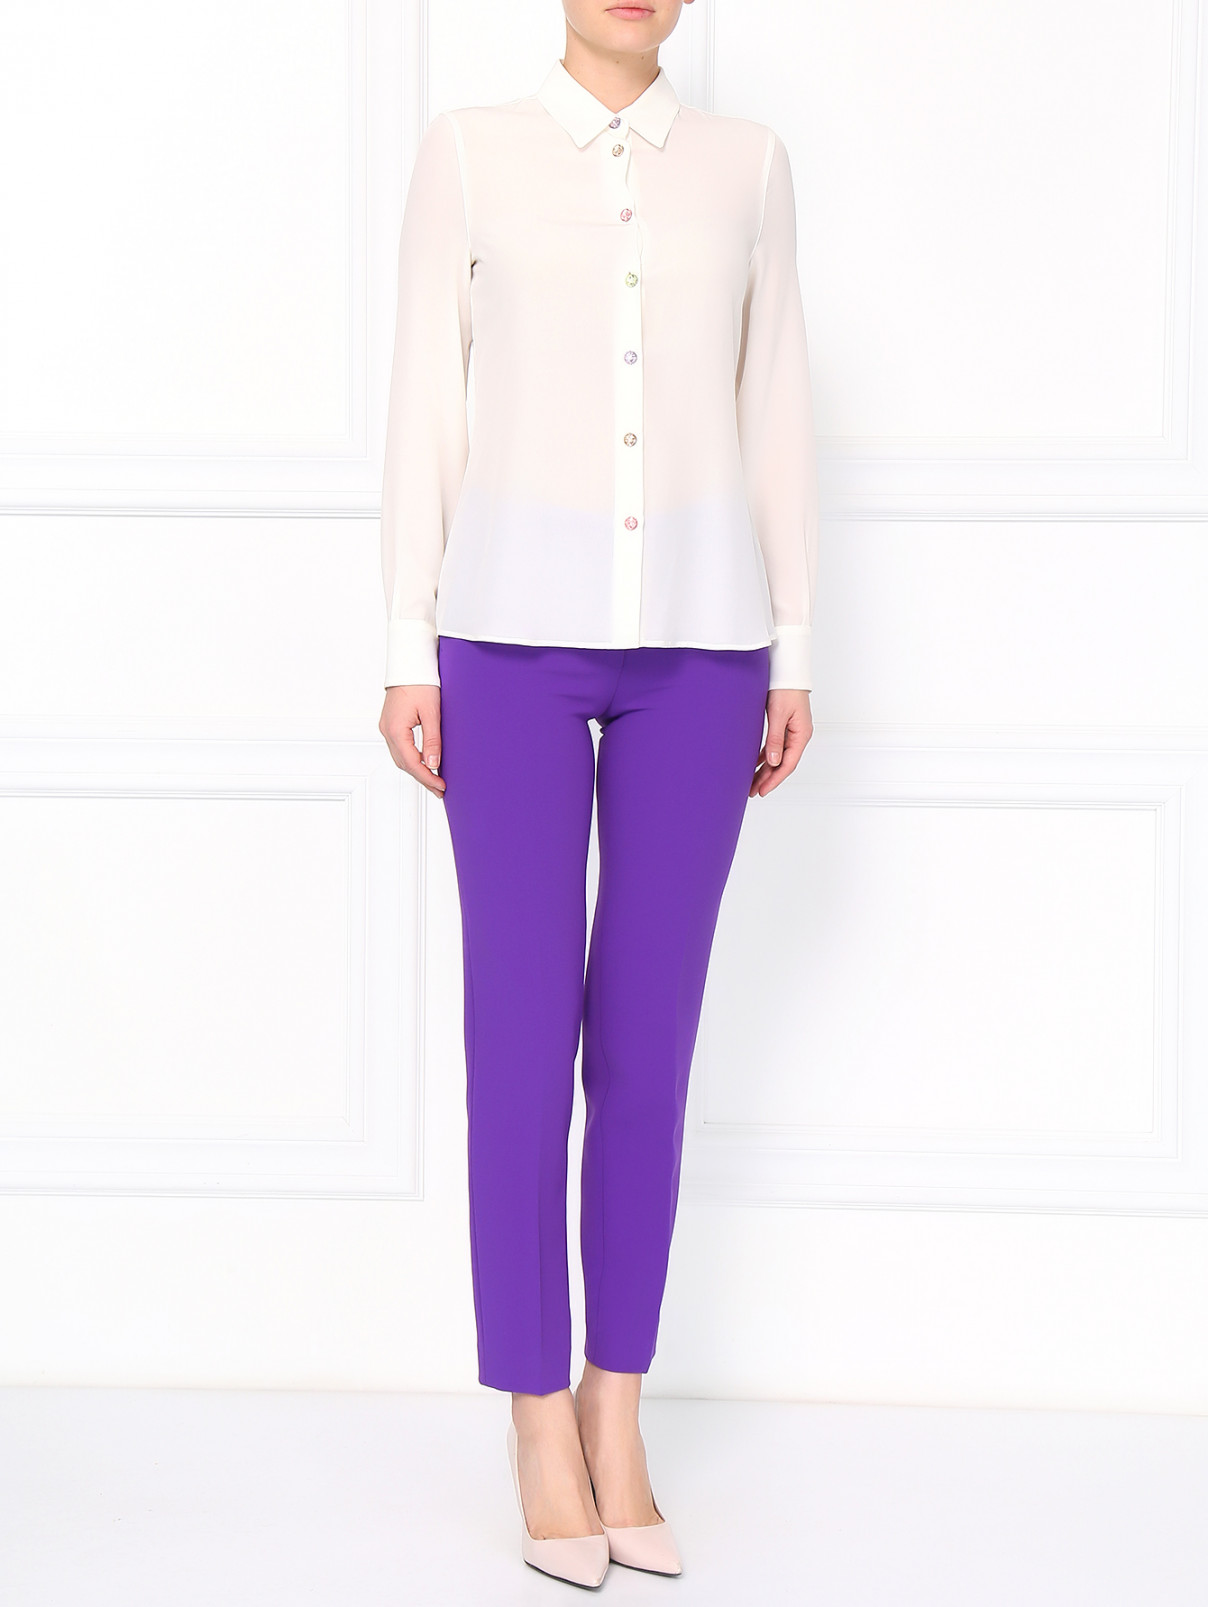 Зауженные брюки Moschino Boutique  –  Модель Общий вид  – Цвет:  Фиолетовый